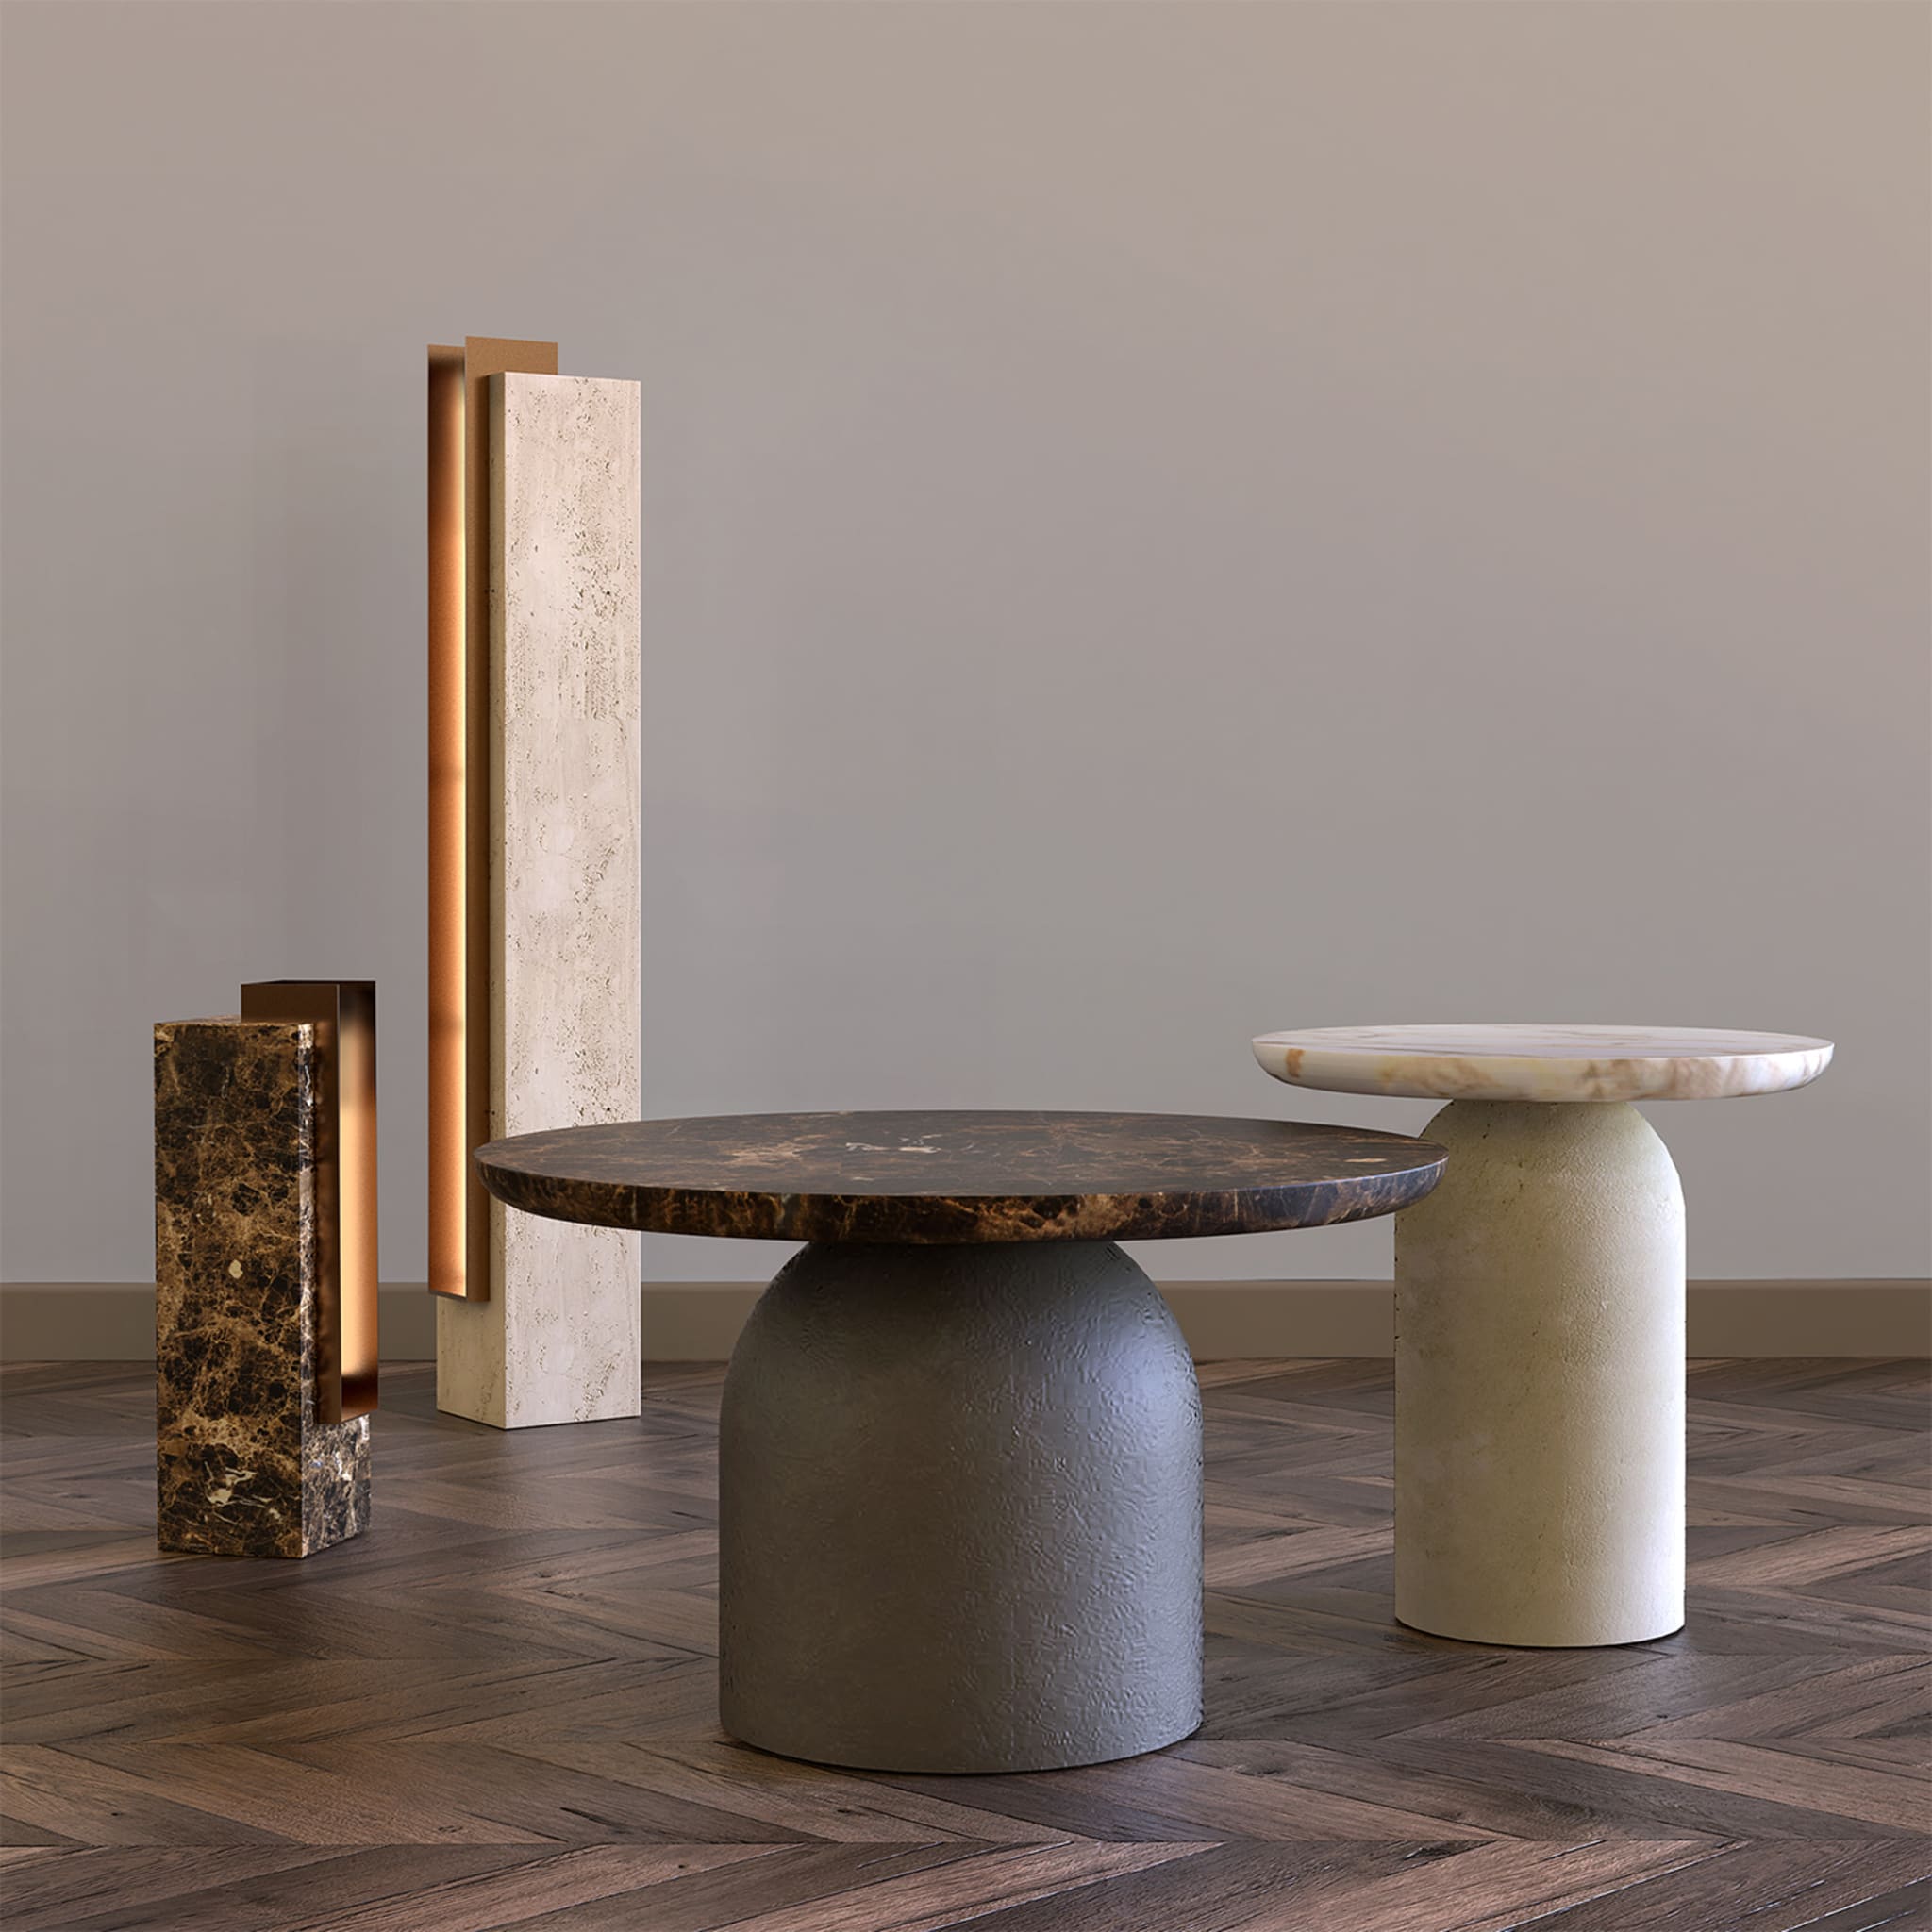 Specchia Travertine and Bronze Table Lamp - Alternative view 3